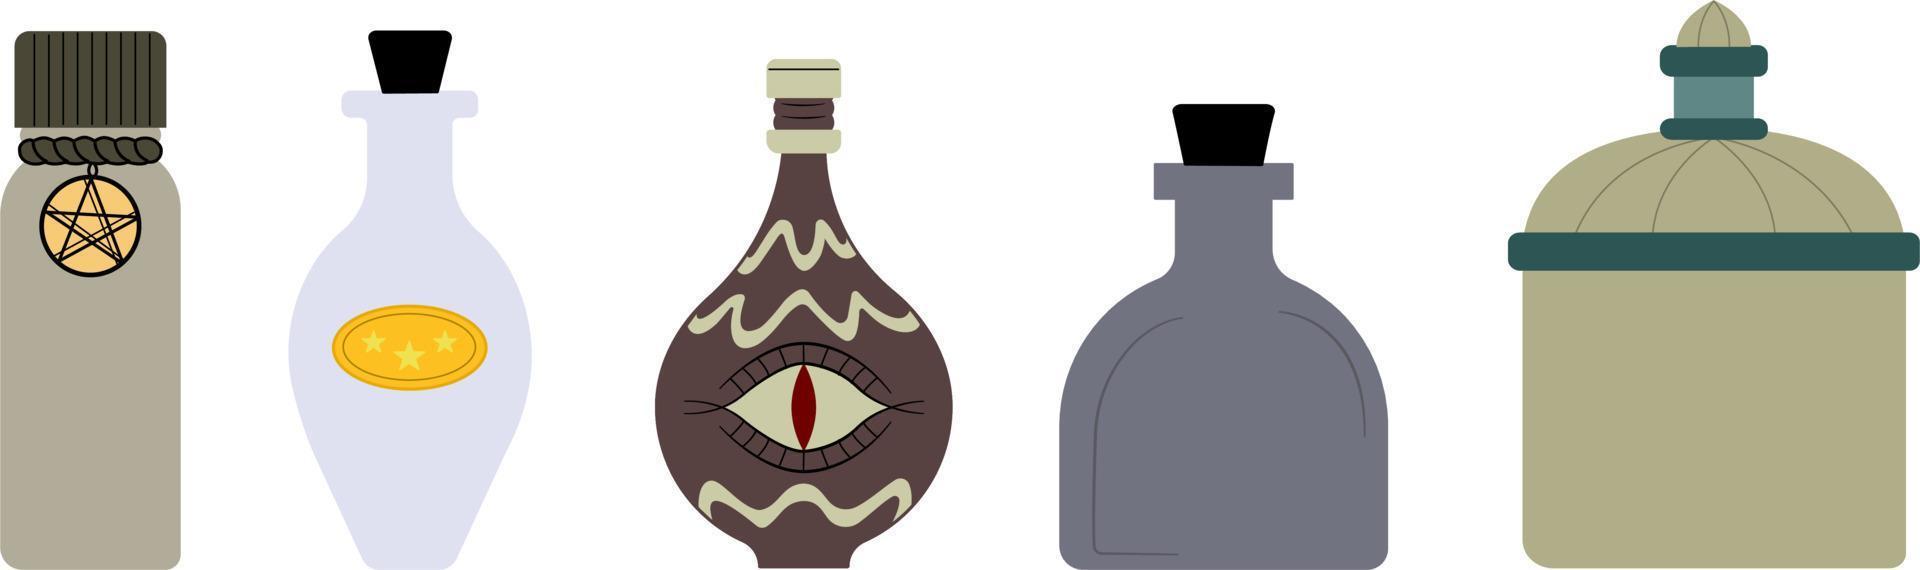 Alchemie-Vektorillustration einer Reihe von Flaschen mit Zaubertränken, einem magischen Glas mit Kristall. vektor